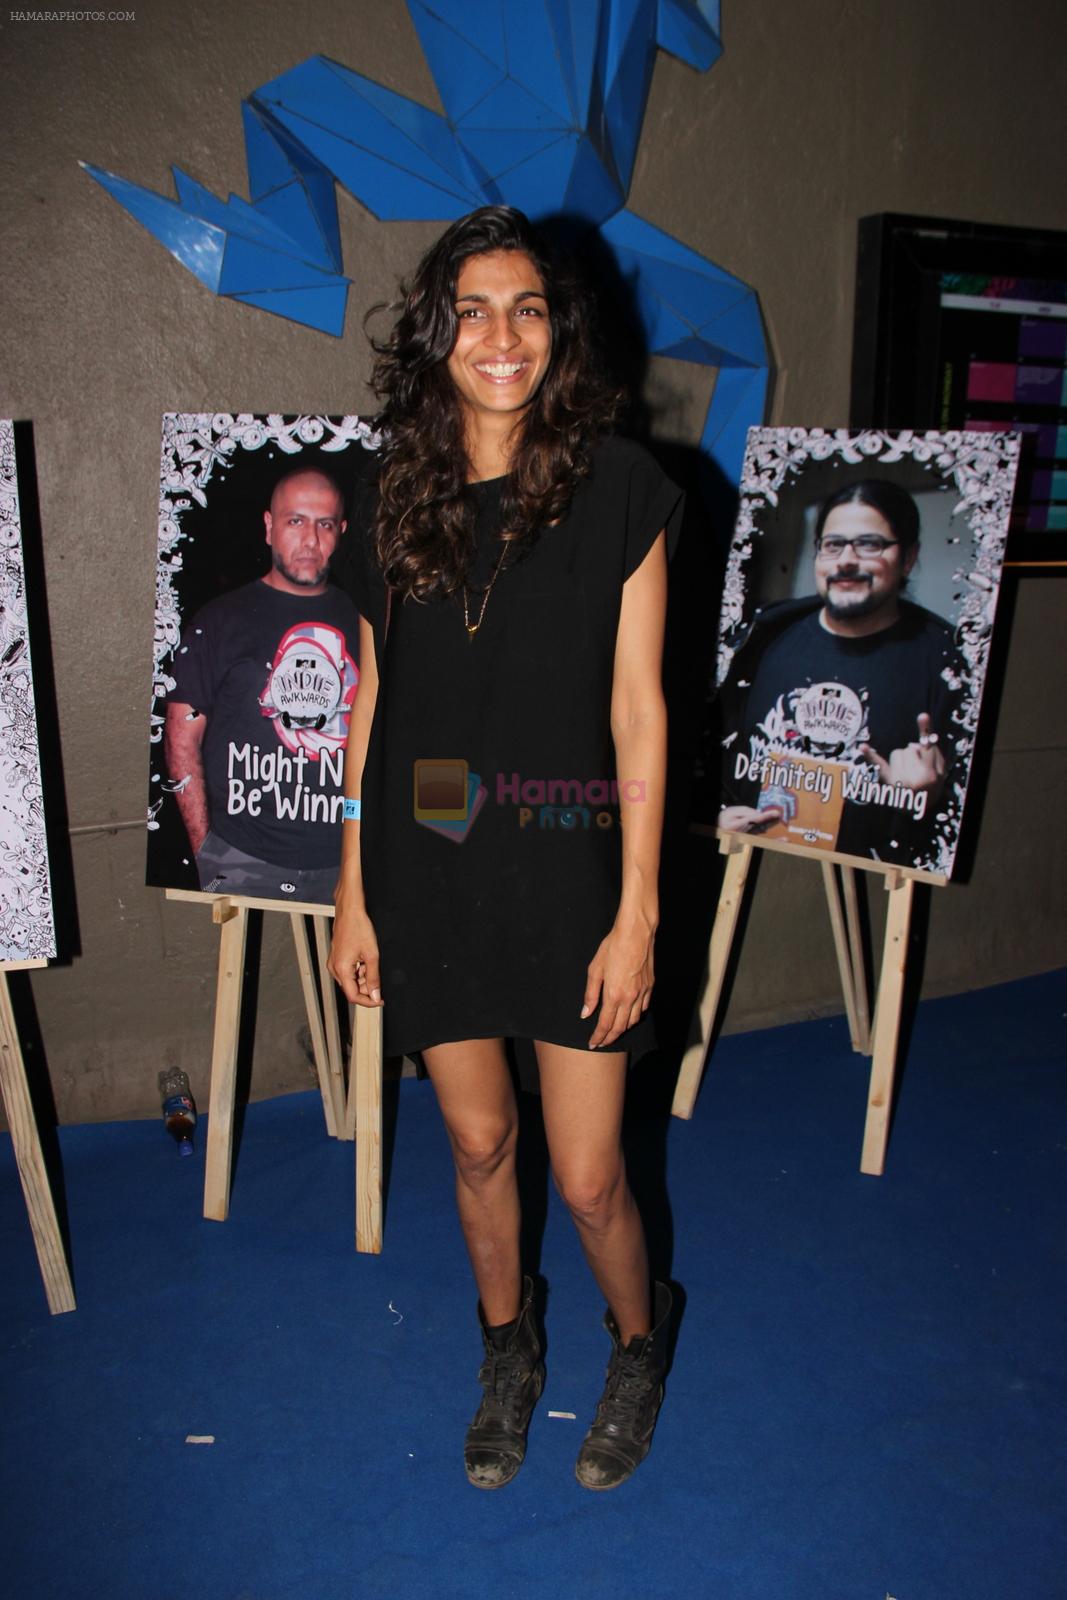 Anushka Manchanda at MTV Indies Awkwards in Mumbai on 1st April 2015